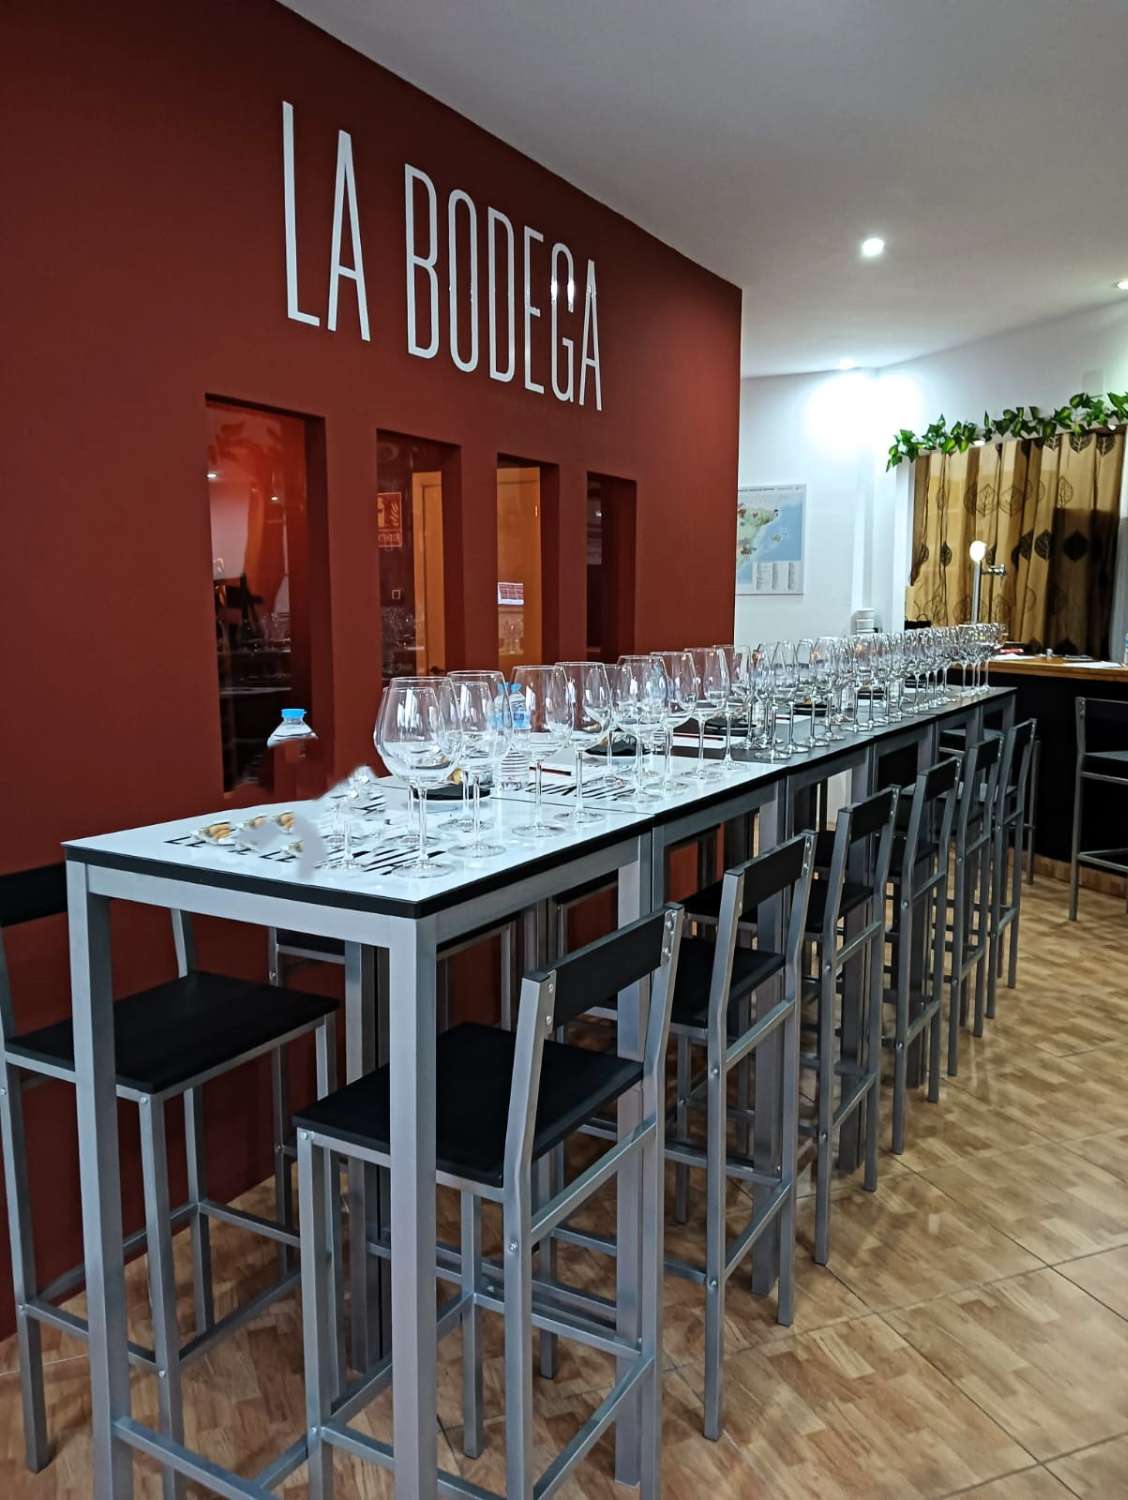 Alquiler Bar Vinoteca en Benalmádena - Gran terraza 20 mesas & Bodega Vinos